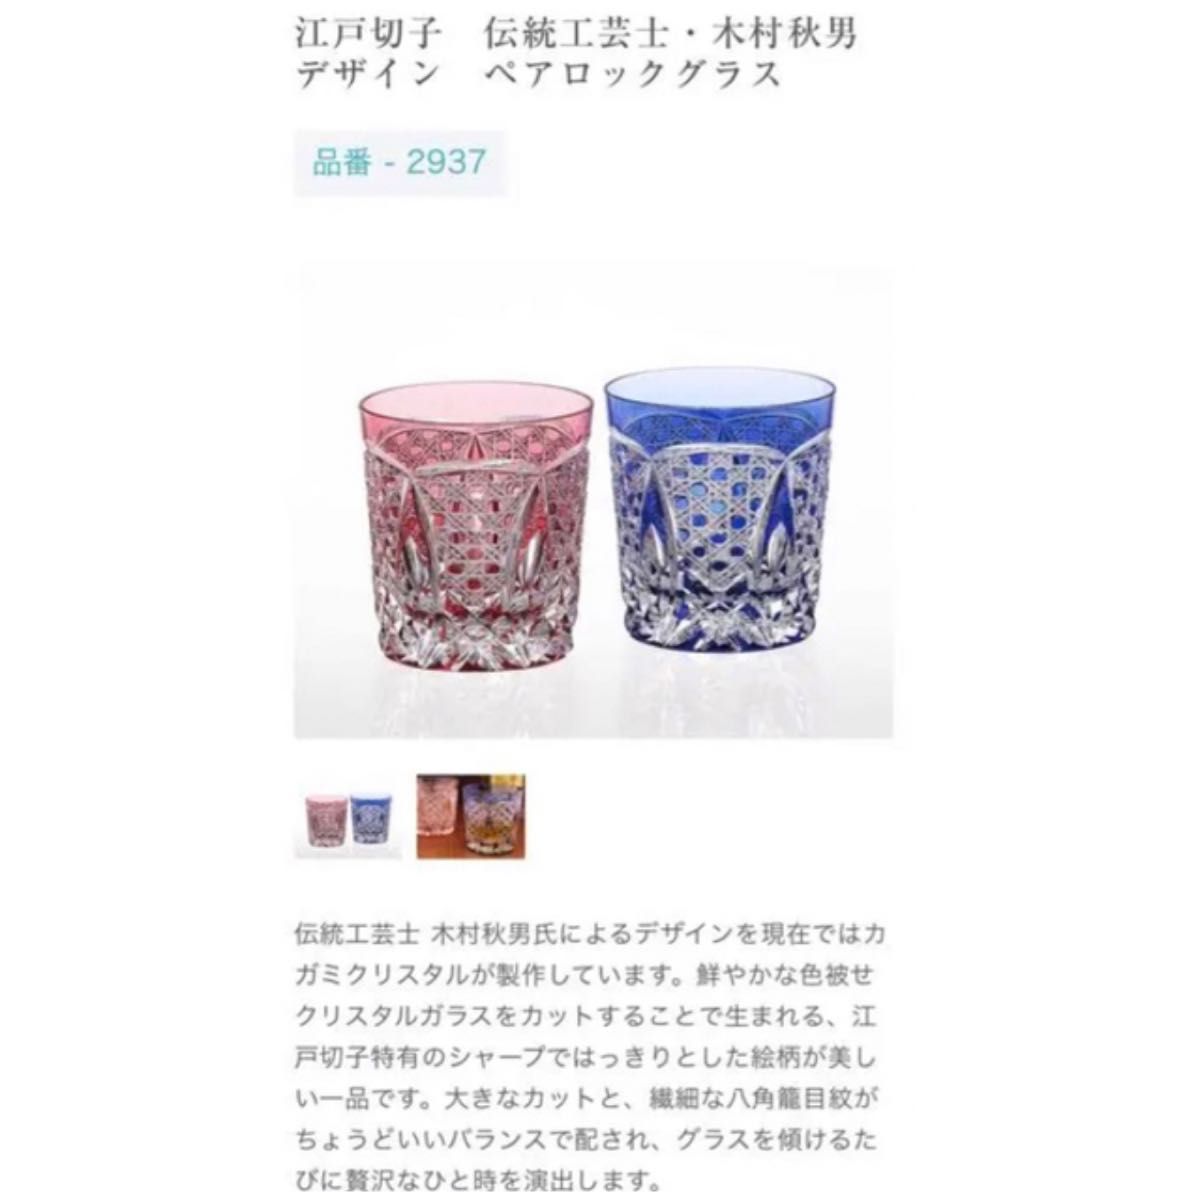 カガミクリスタル 江戸切子 ペアロックグラス 美術、工芸品 美術、工芸